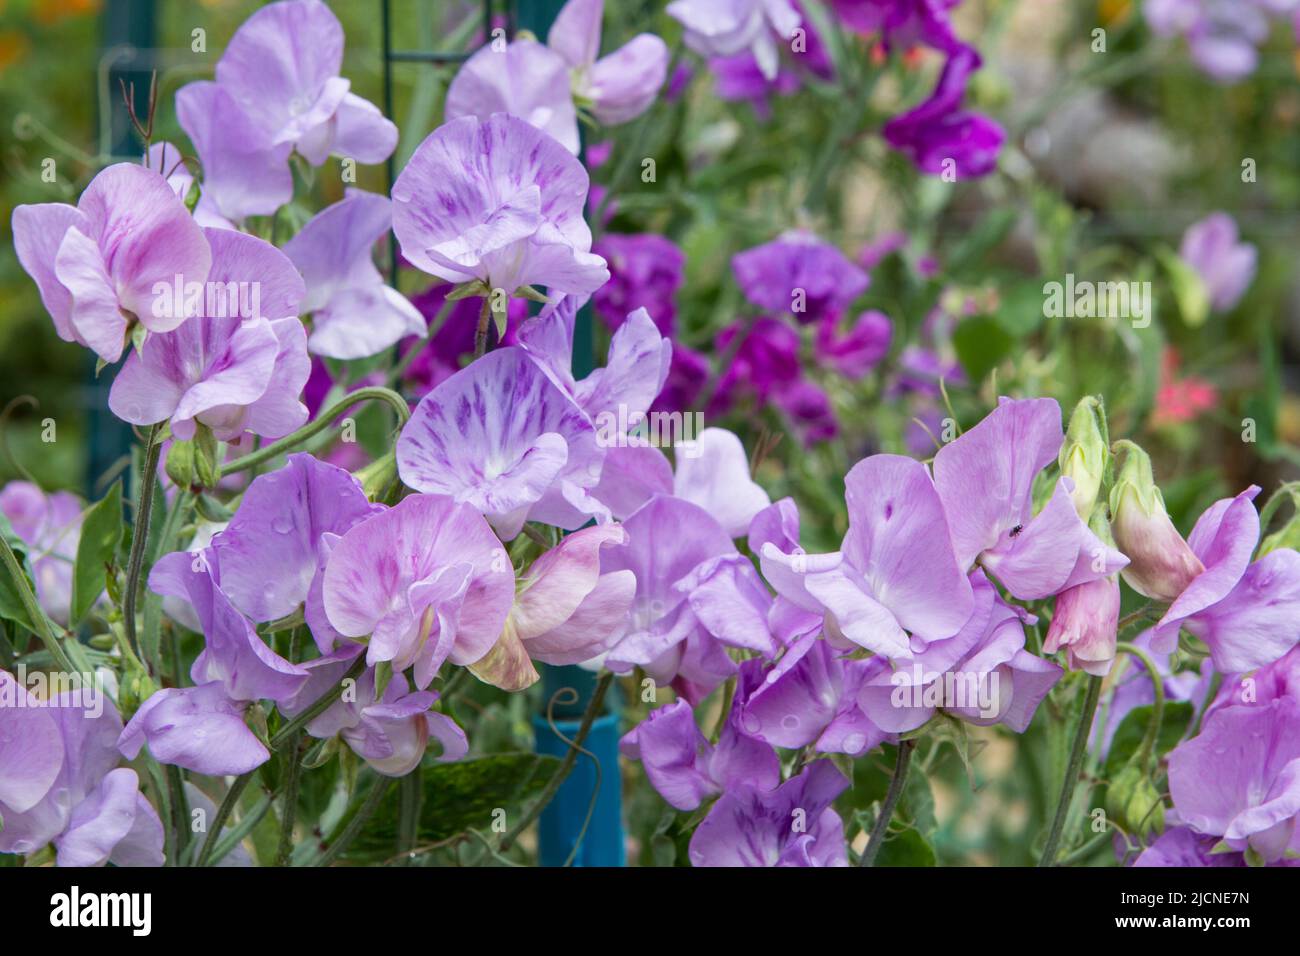 Pois doux multicolores (Lathyrus odorous) dans des tons de violet et de rose florissant dans un jardin d'été. Banque D'Images